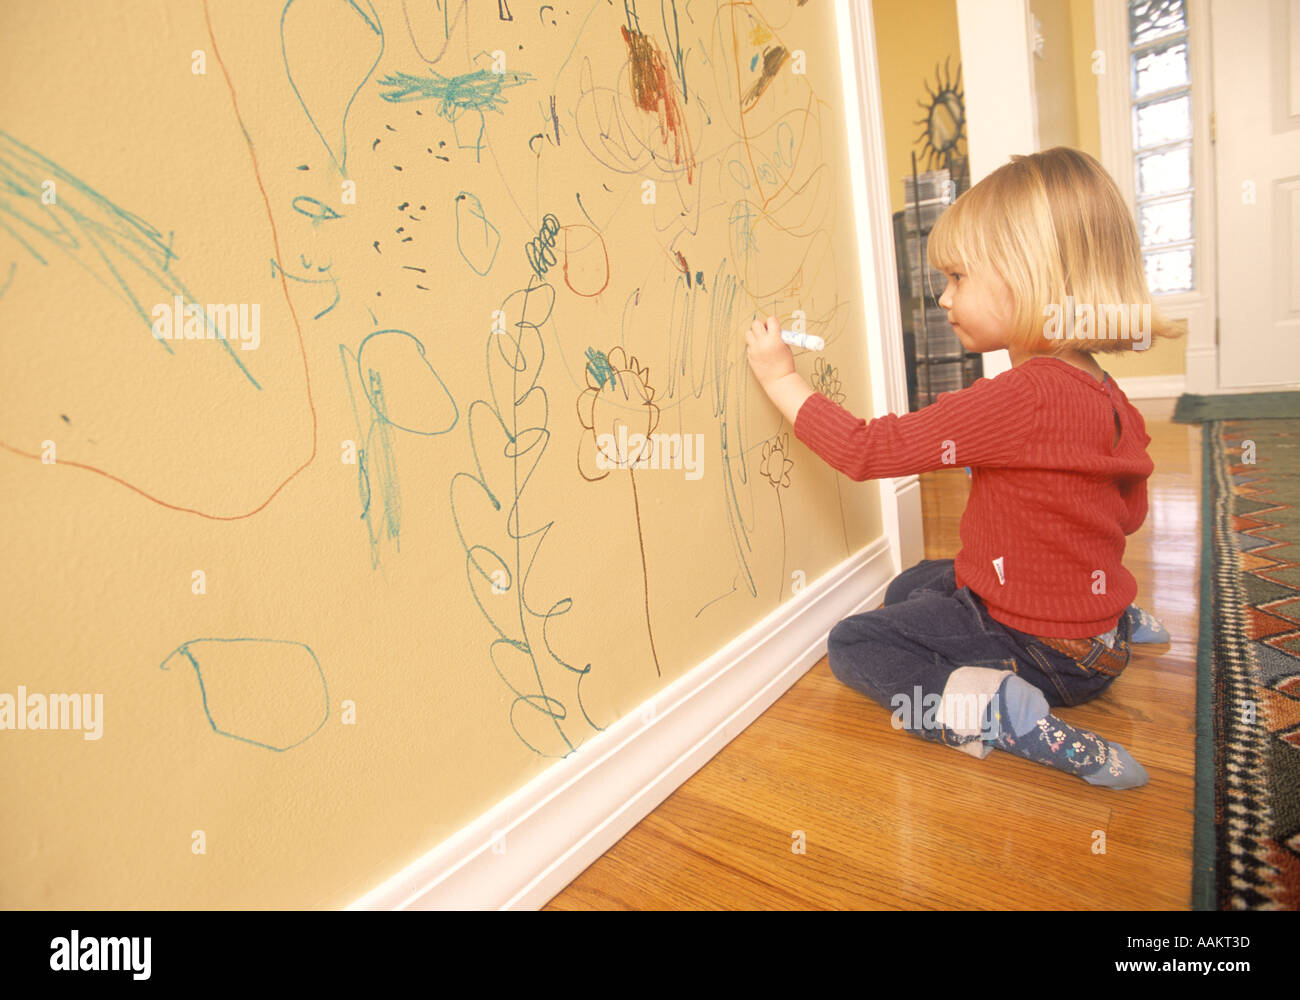 Ребенок изрисовал. Ребенок рисует на стене. Детское творчество на обоях на стене. Ребенок разрисовал стены. Рисование на стенах для детей.